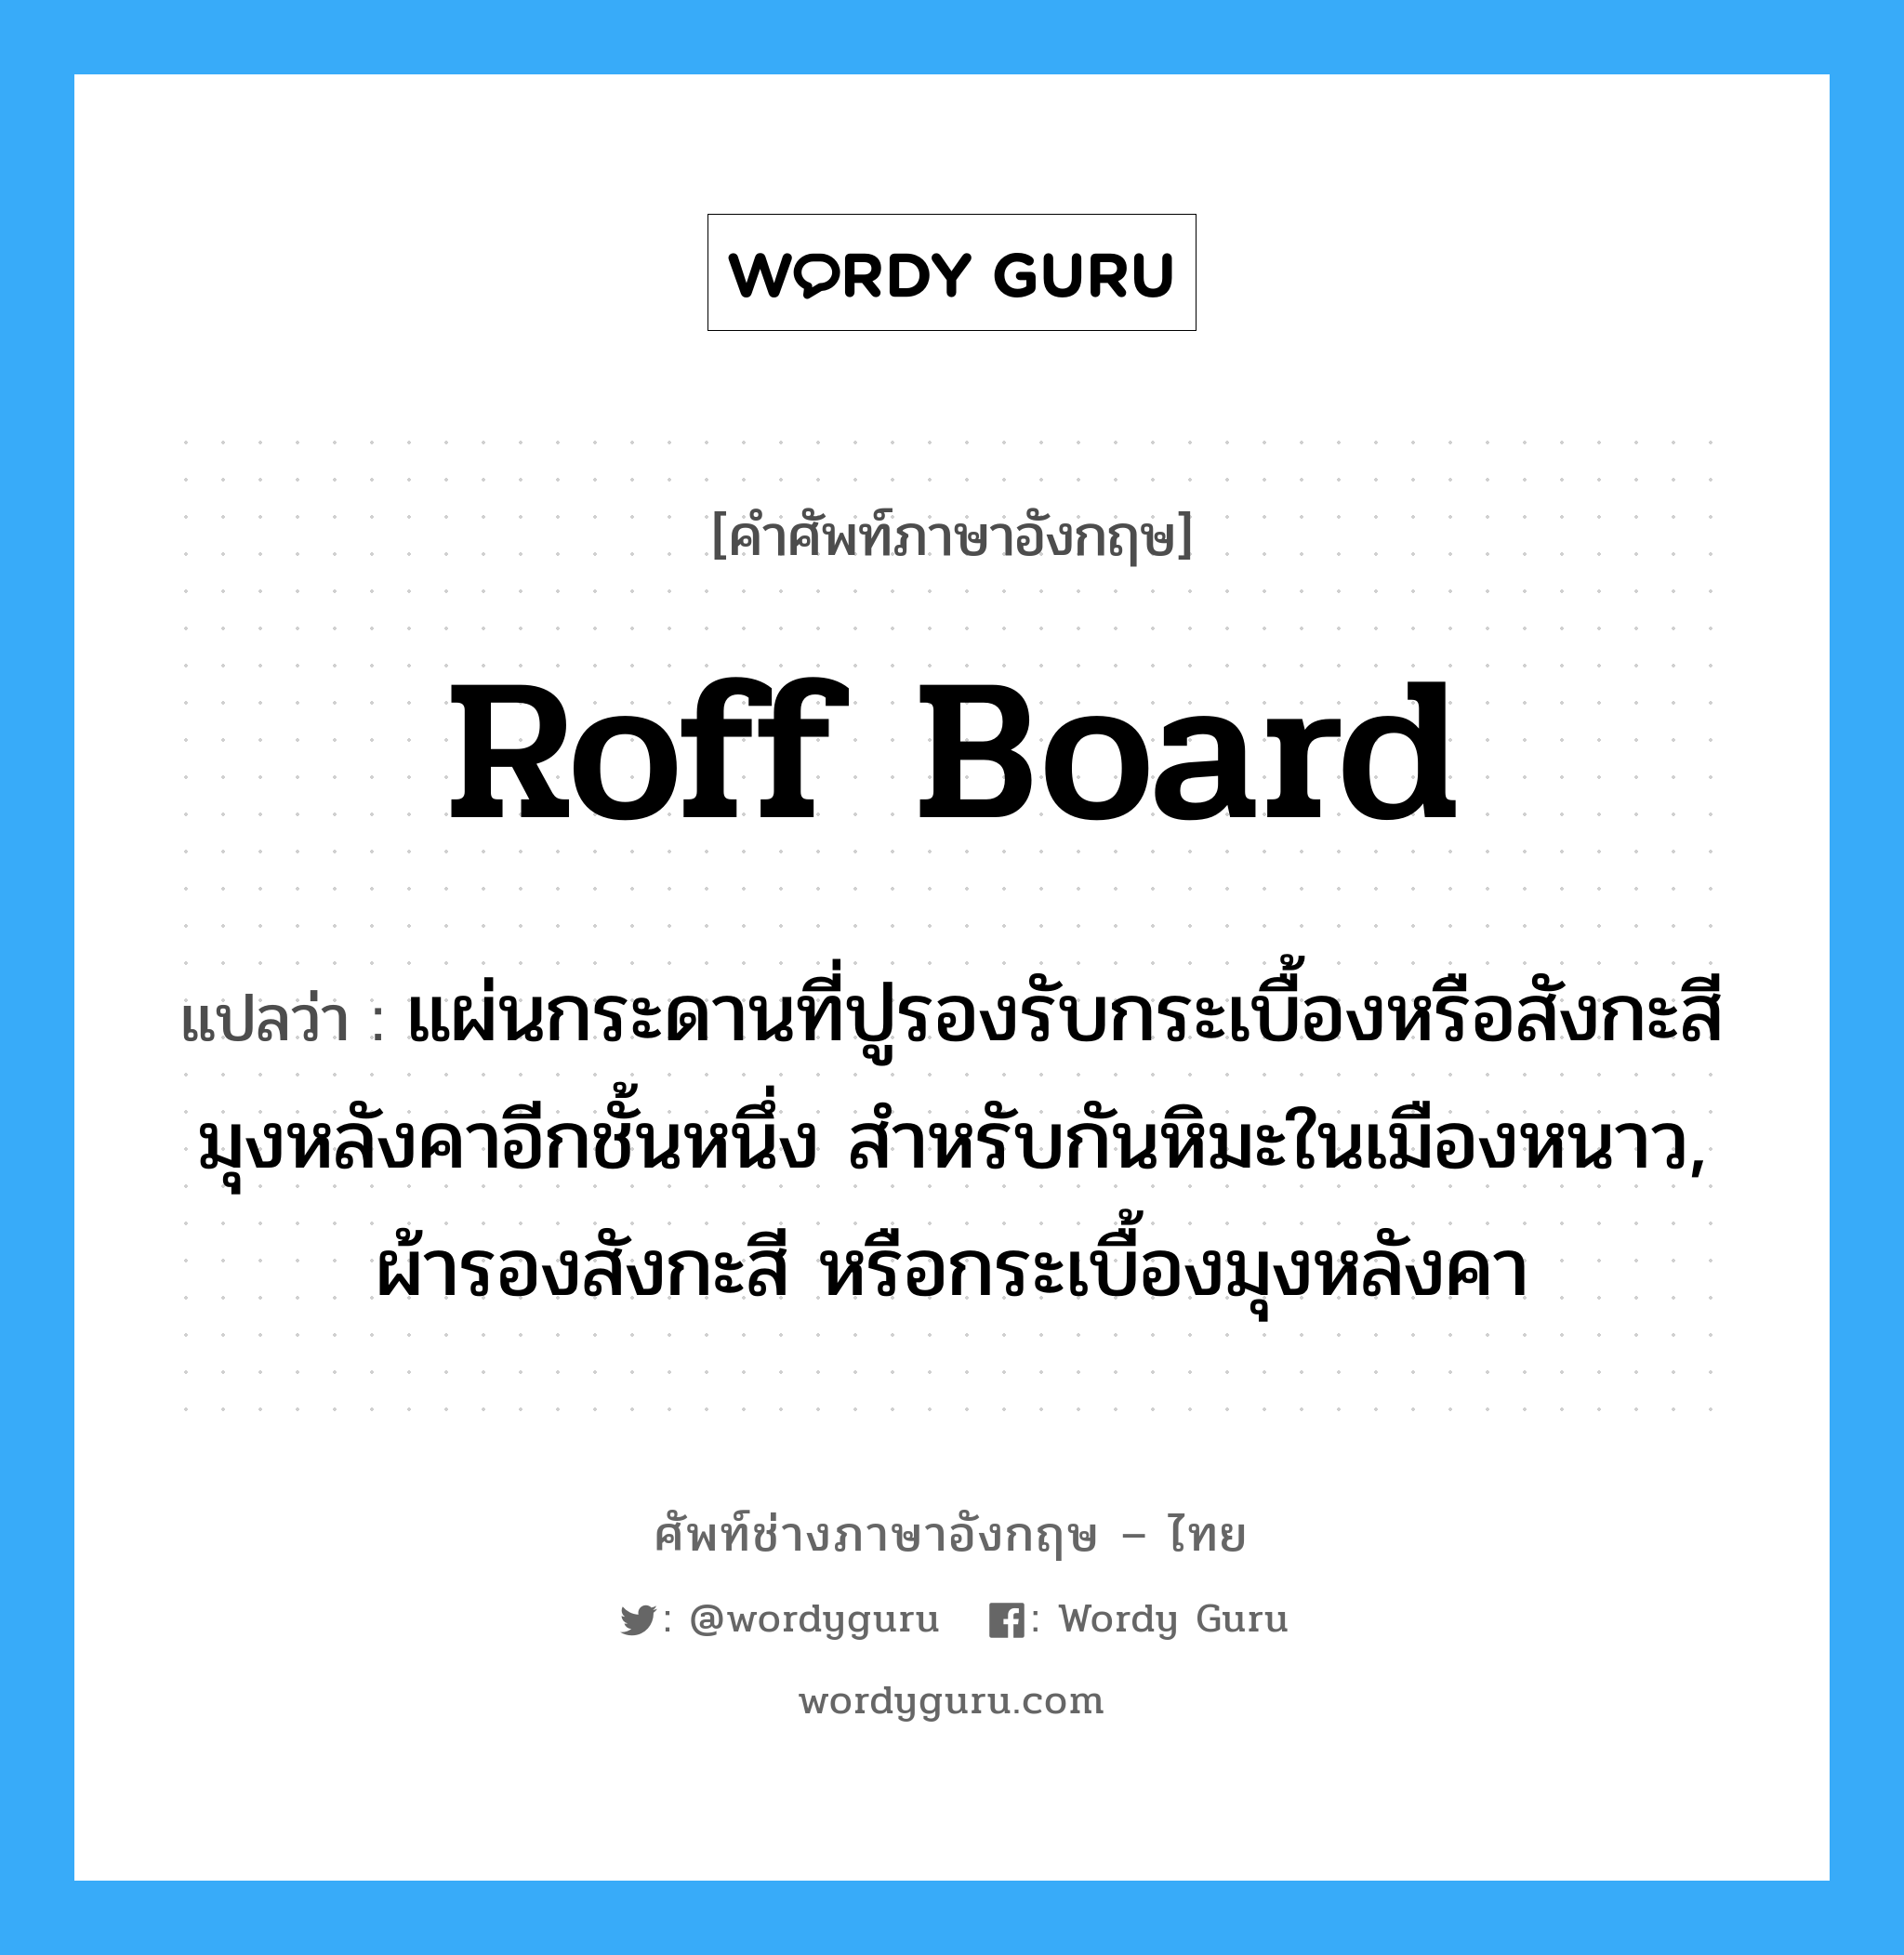 roff board แปลว่า?, คำศัพท์ช่างภาษาอังกฤษ - ไทย roff board คำศัพท์ภาษาอังกฤษ roff board แปลว่า แผ่นกระดานที่ปูรองรับกระเบื้องหรือสังกะสีมุงหลังคาอีกชั้นหนึ่ง สำหรับกันหิมะในเมืองหนาว, ผ้ารองสังกะสี หรือกระเบื้องมุงหลังคา